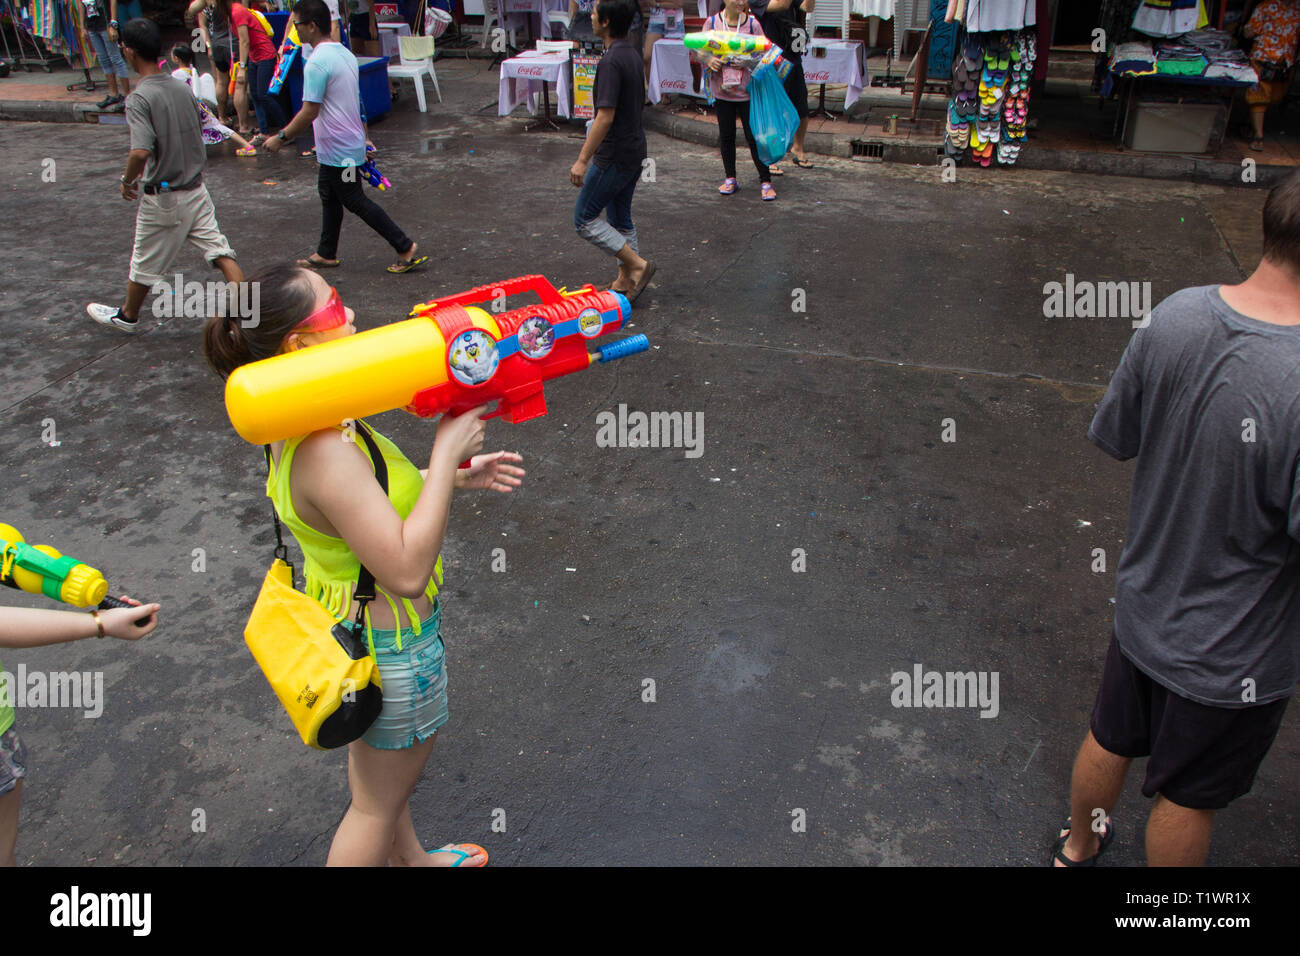 Les gens avec les pistolets à eau célébrant le nouvel an Thaï de Songkran à Khaosan Road, Bangkok Thaïlande Banque D'Images